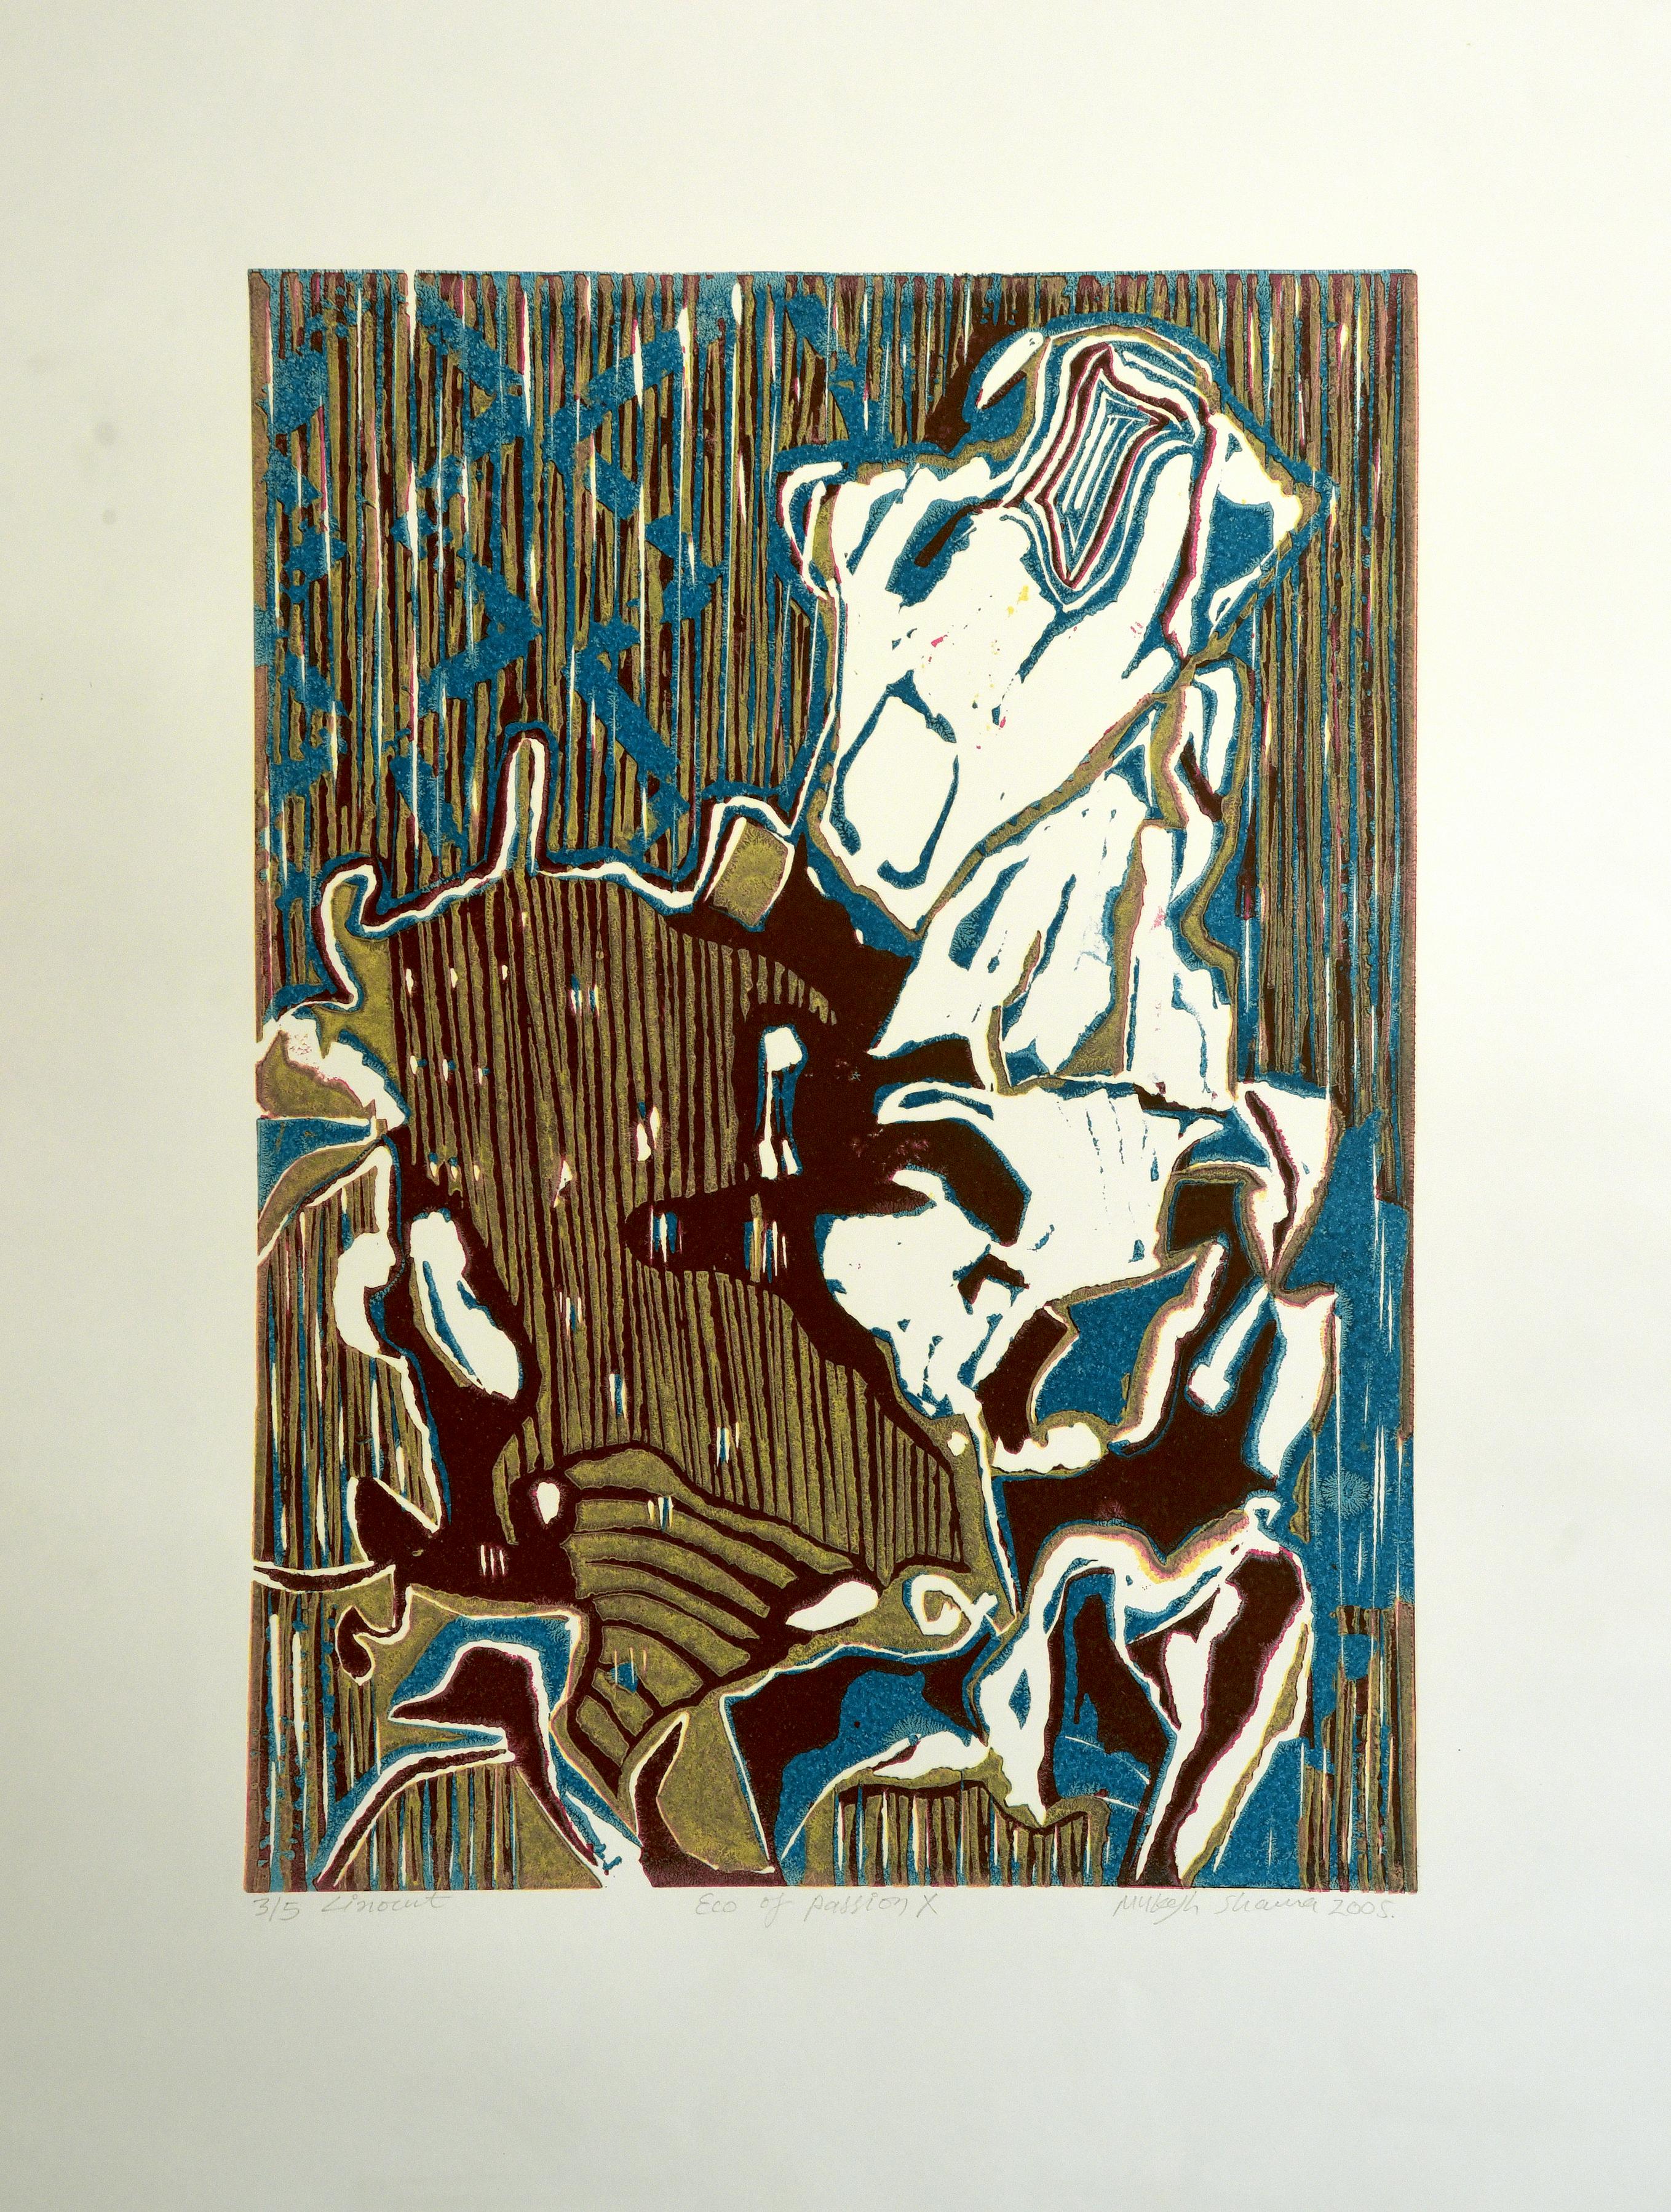 Abstrakte Landschaft Indien Auflage 3/5 Linolschnitt Druck Natur Ecco of Passion Blue – Print von Mukesh Sharma